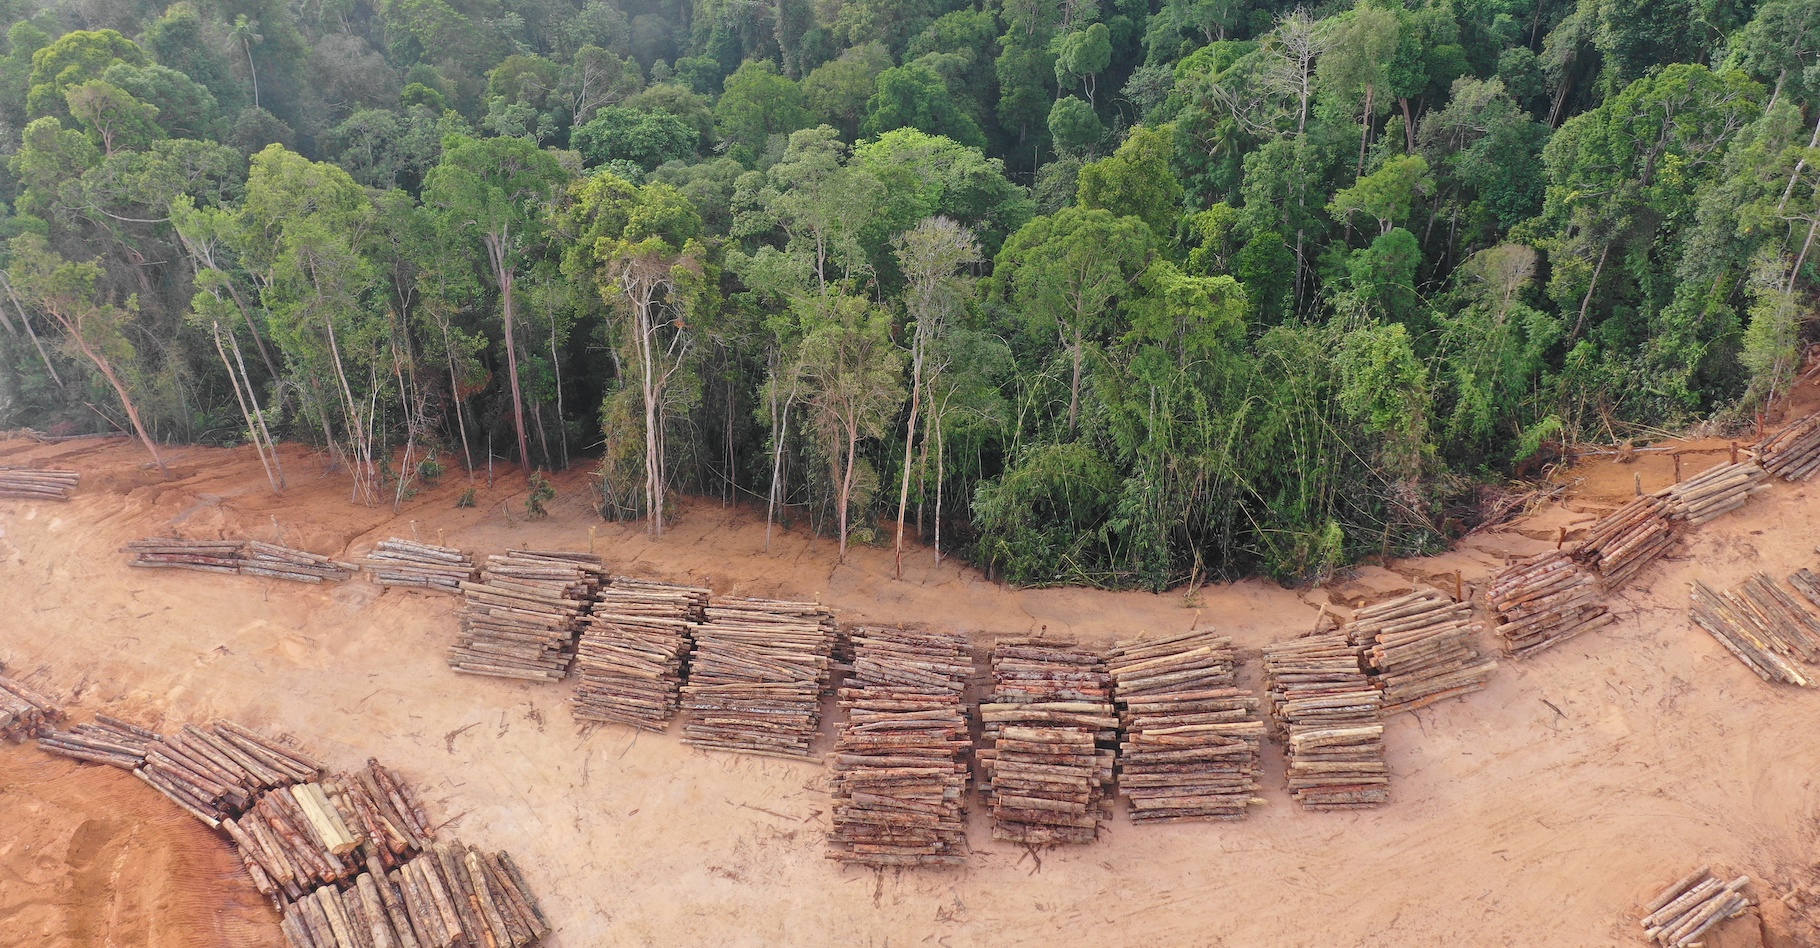 Les forêts vierges ont encore beaucoup reculé l’année dernière. En cause, la déforestation, mais aussi les incendies et d’autres évènements liés au changement climatique. © Richard Carey, Adobe Stock